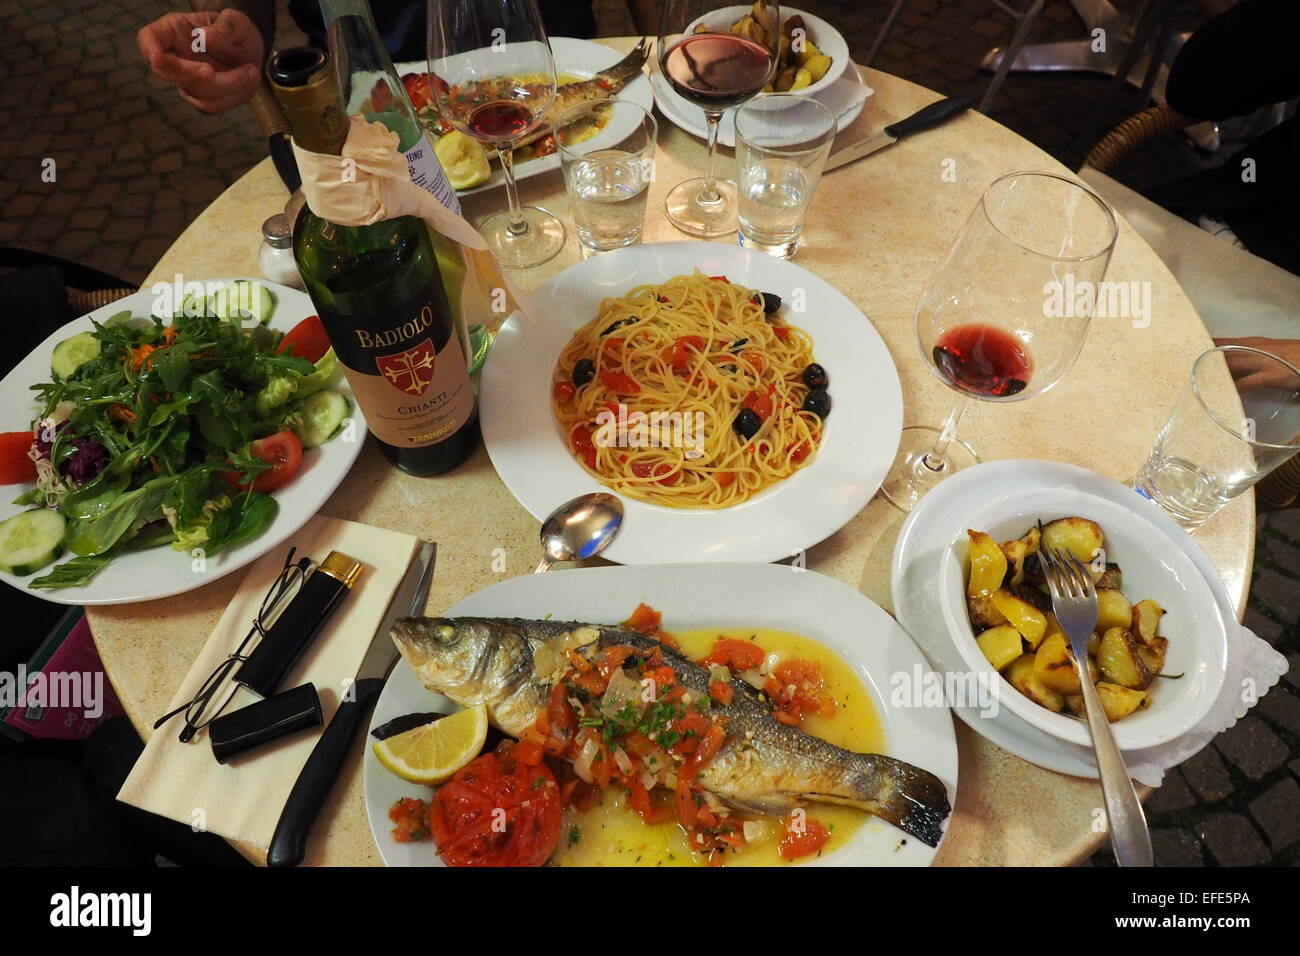 Eine Mahlzeit mit ganzer Fisch, eine Schüssel mit Spaghetti und grünem Salat. Stockfoto